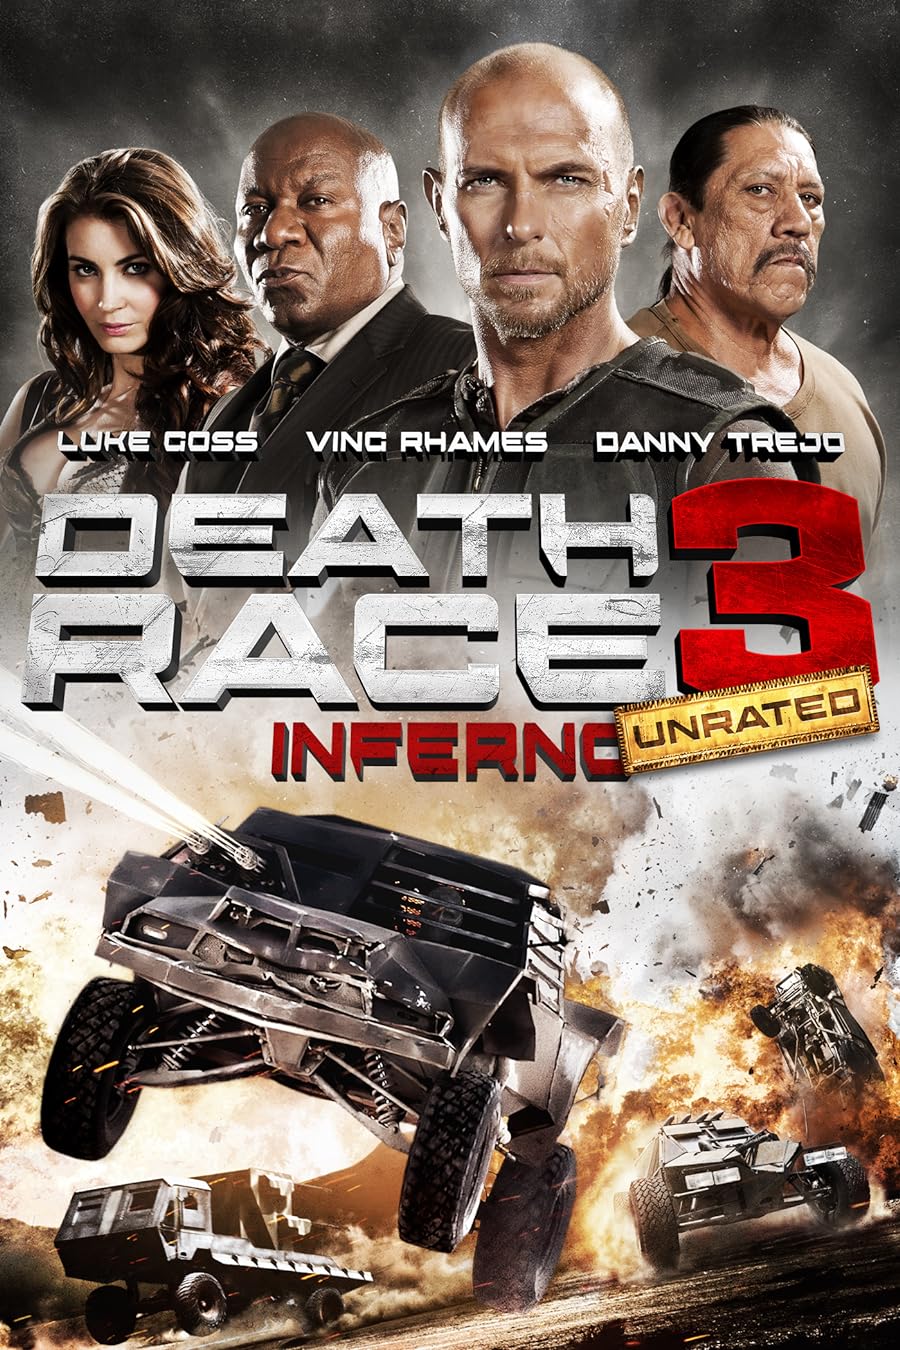 دانلود فیلم Death Race: Inferno 2013